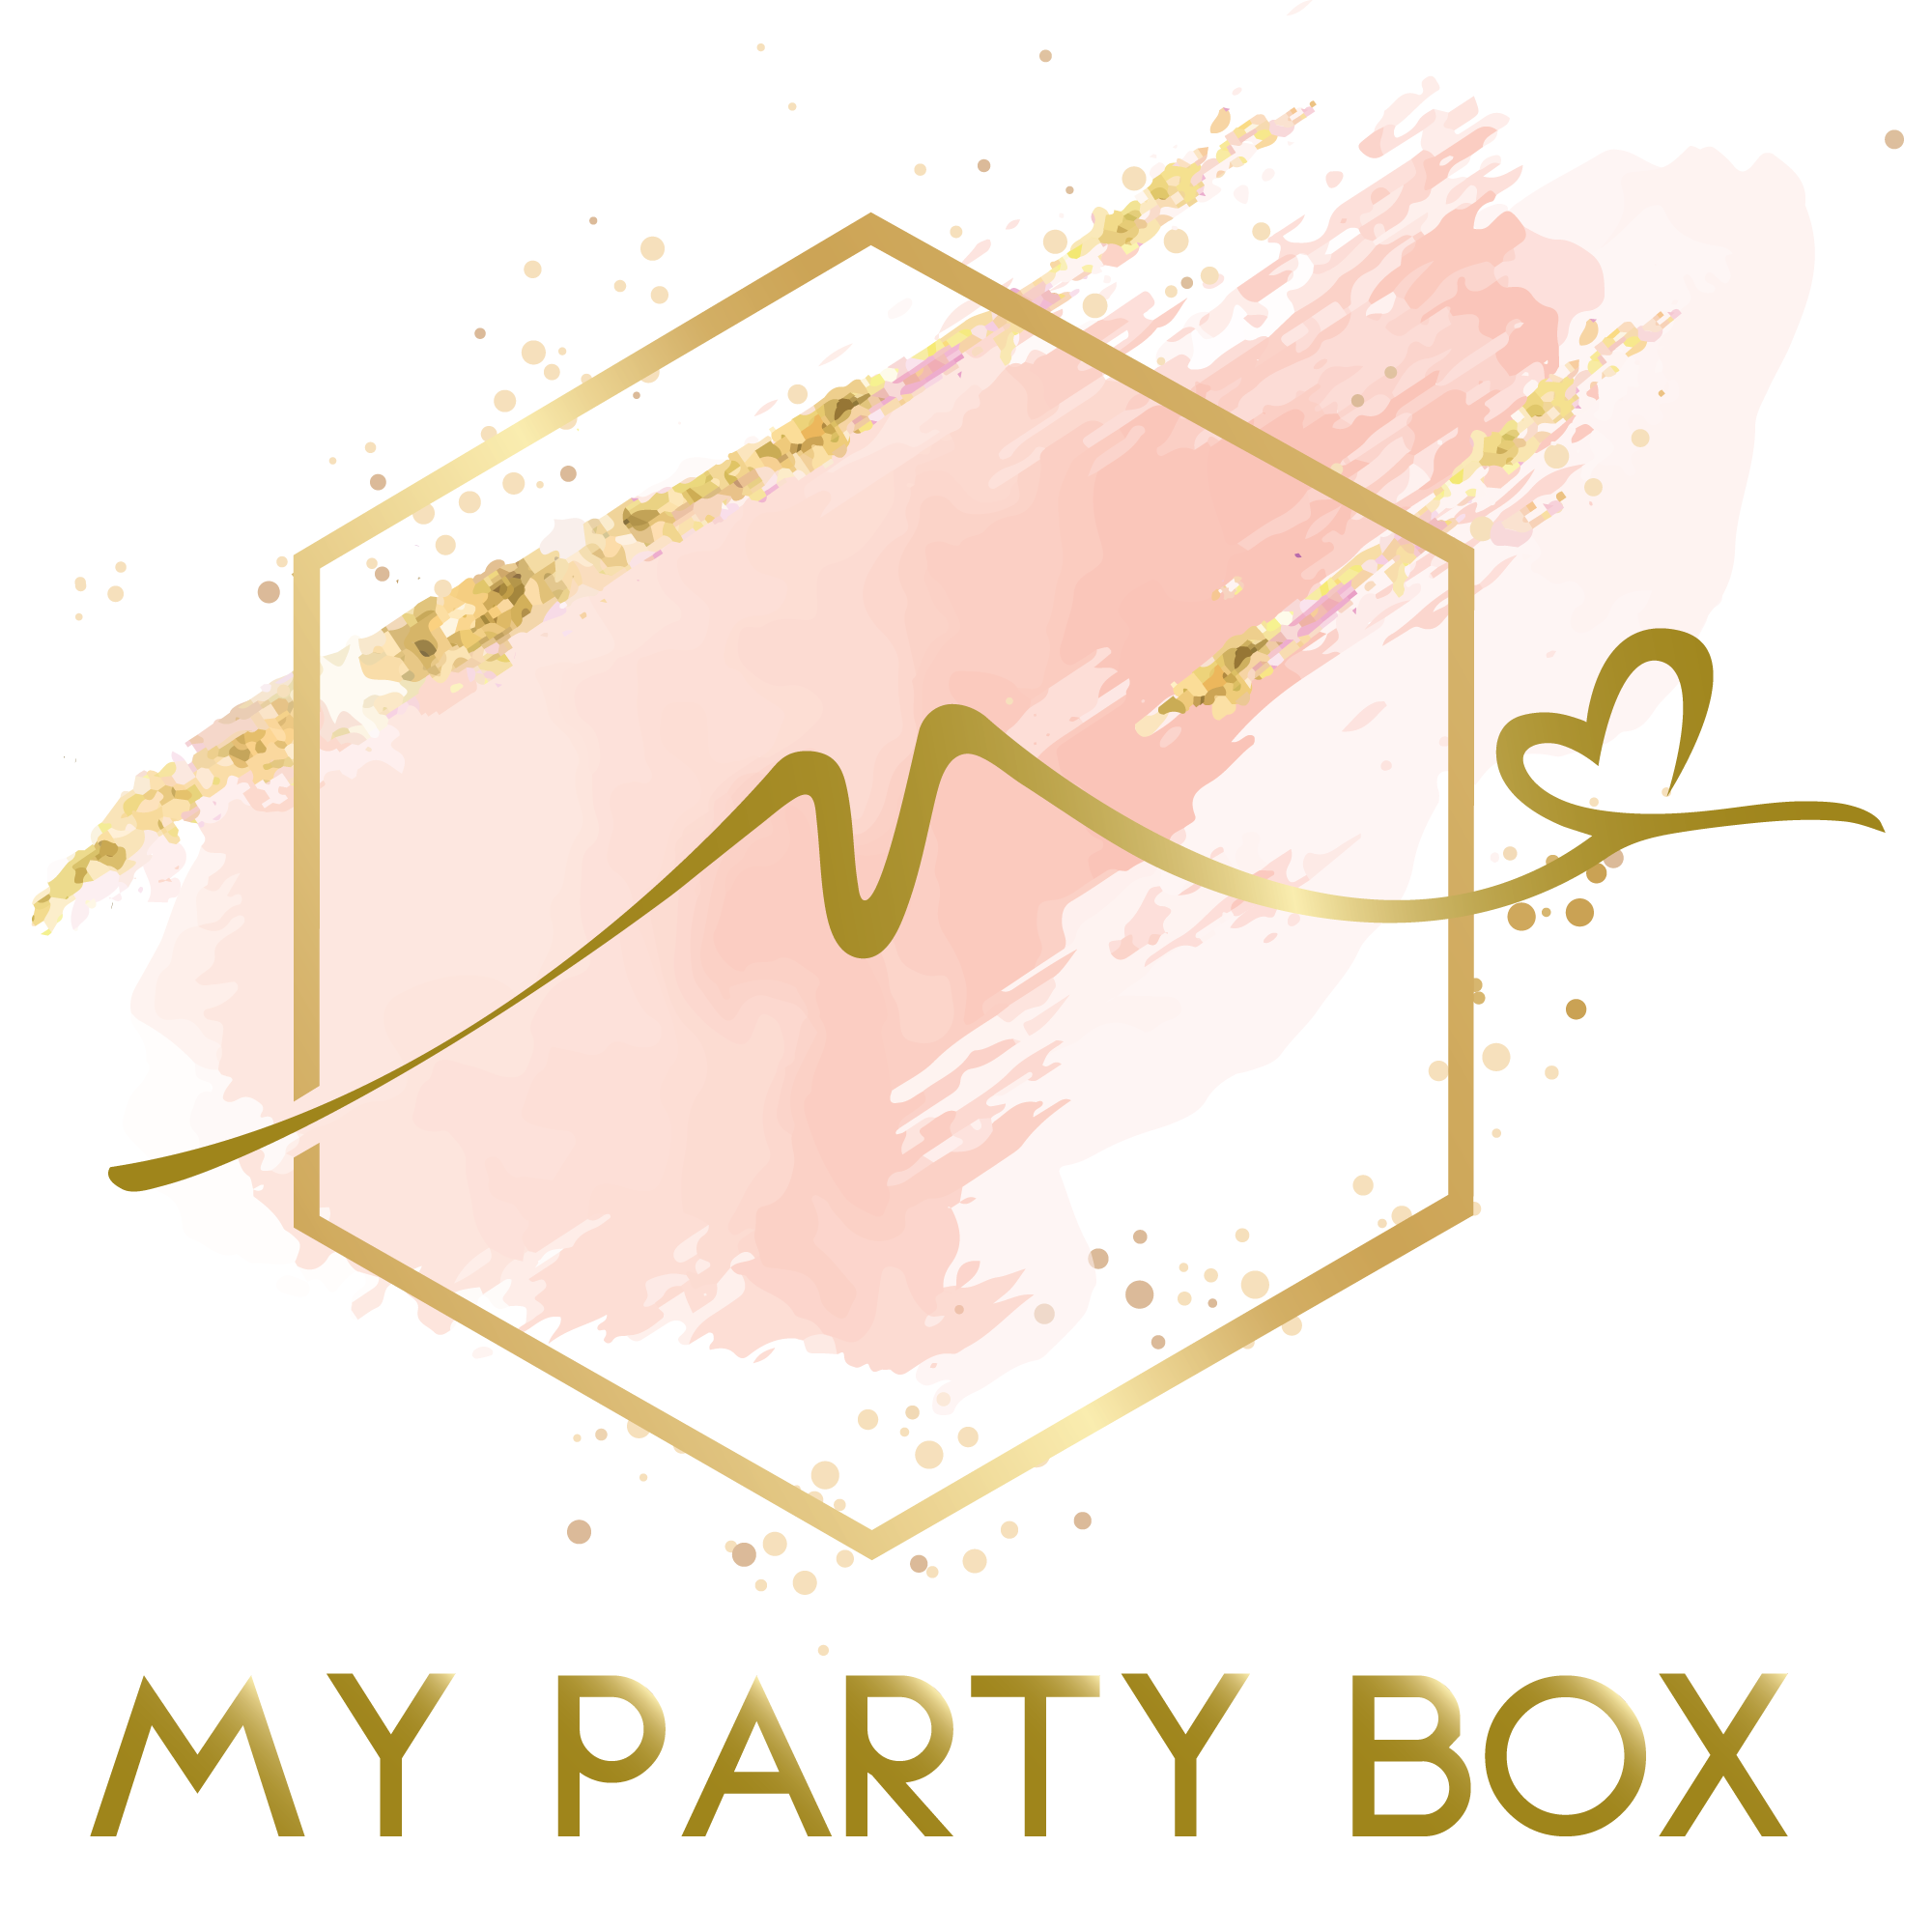 Mypartybox.co.nz